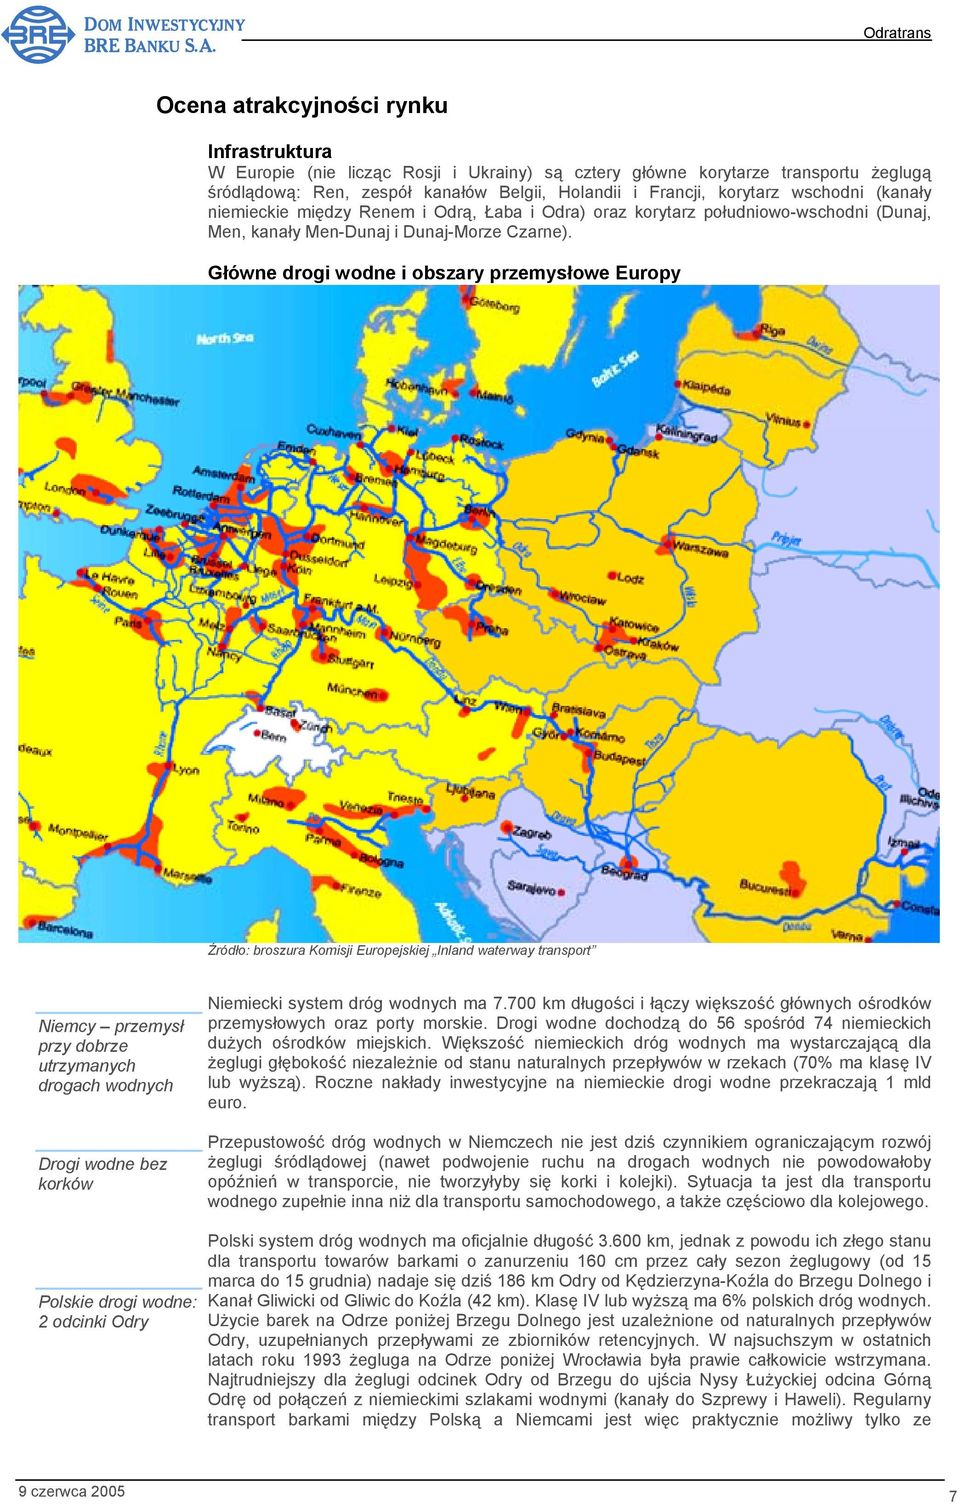 Główne drogi wodne i obszary przemysłowe Europy Źródło: broszura Komisji Europejskiej Inland waterway transport Niemcy przemysł przy dobrze utrzymanych drogach wodnych Drogi wodne bez korków